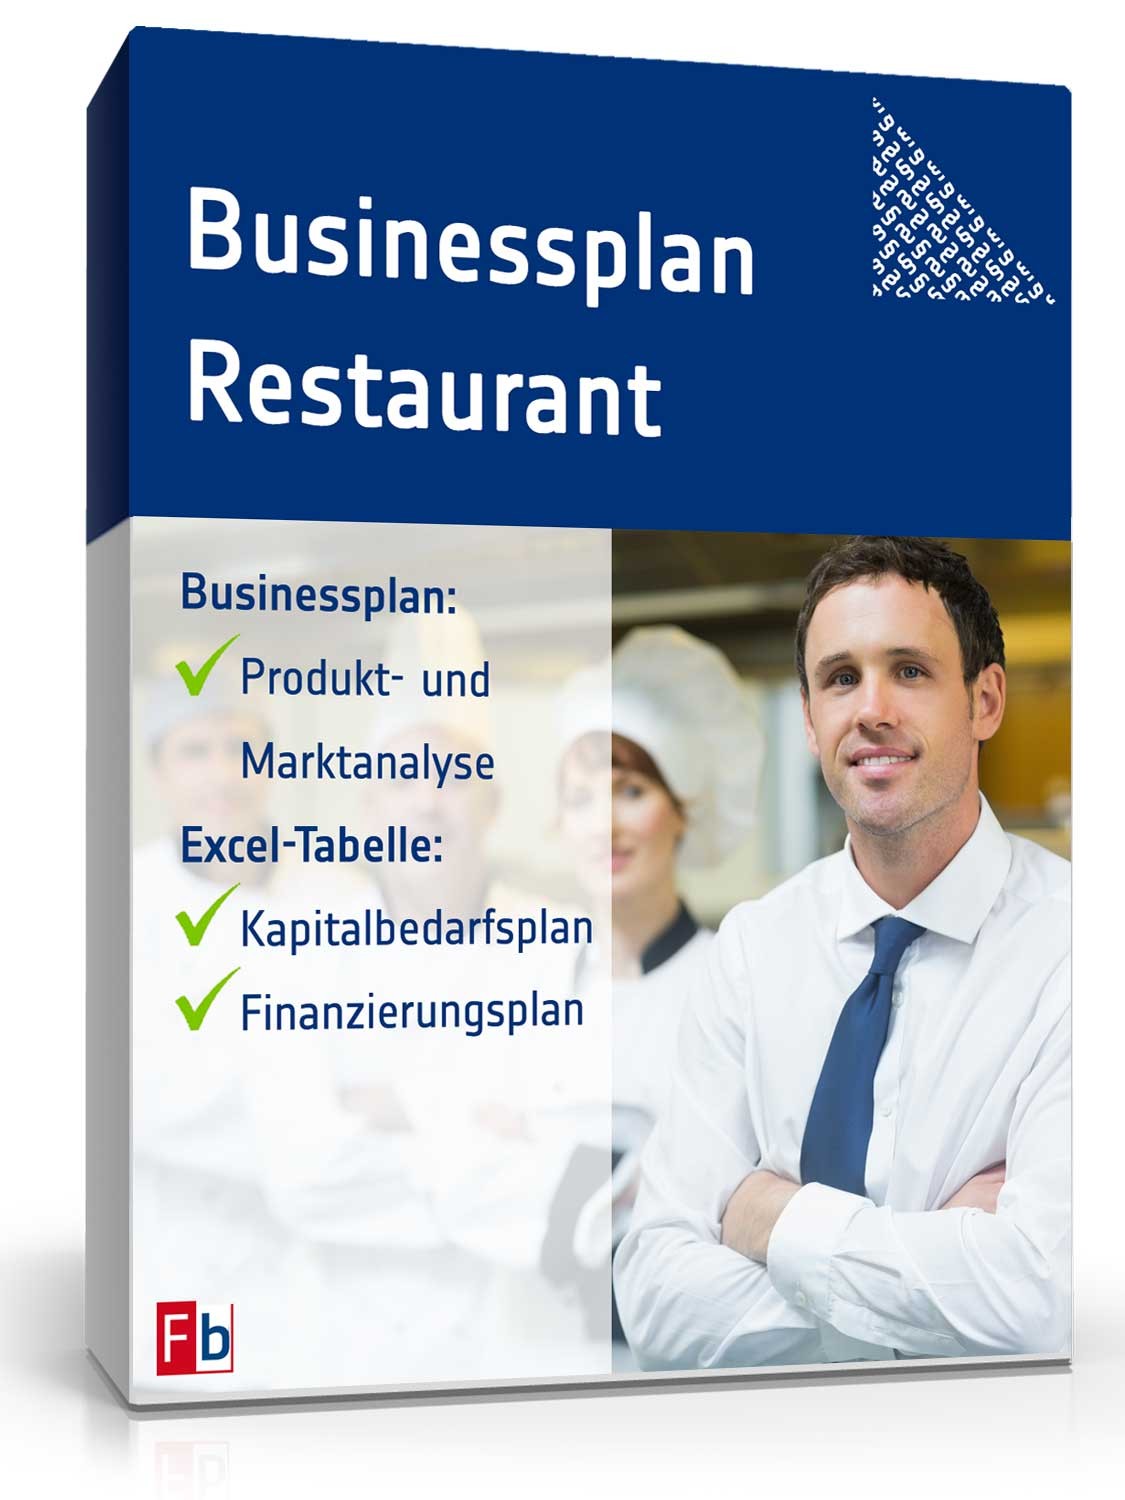 Hauptbild des Produkts: Businessplan Restaurant